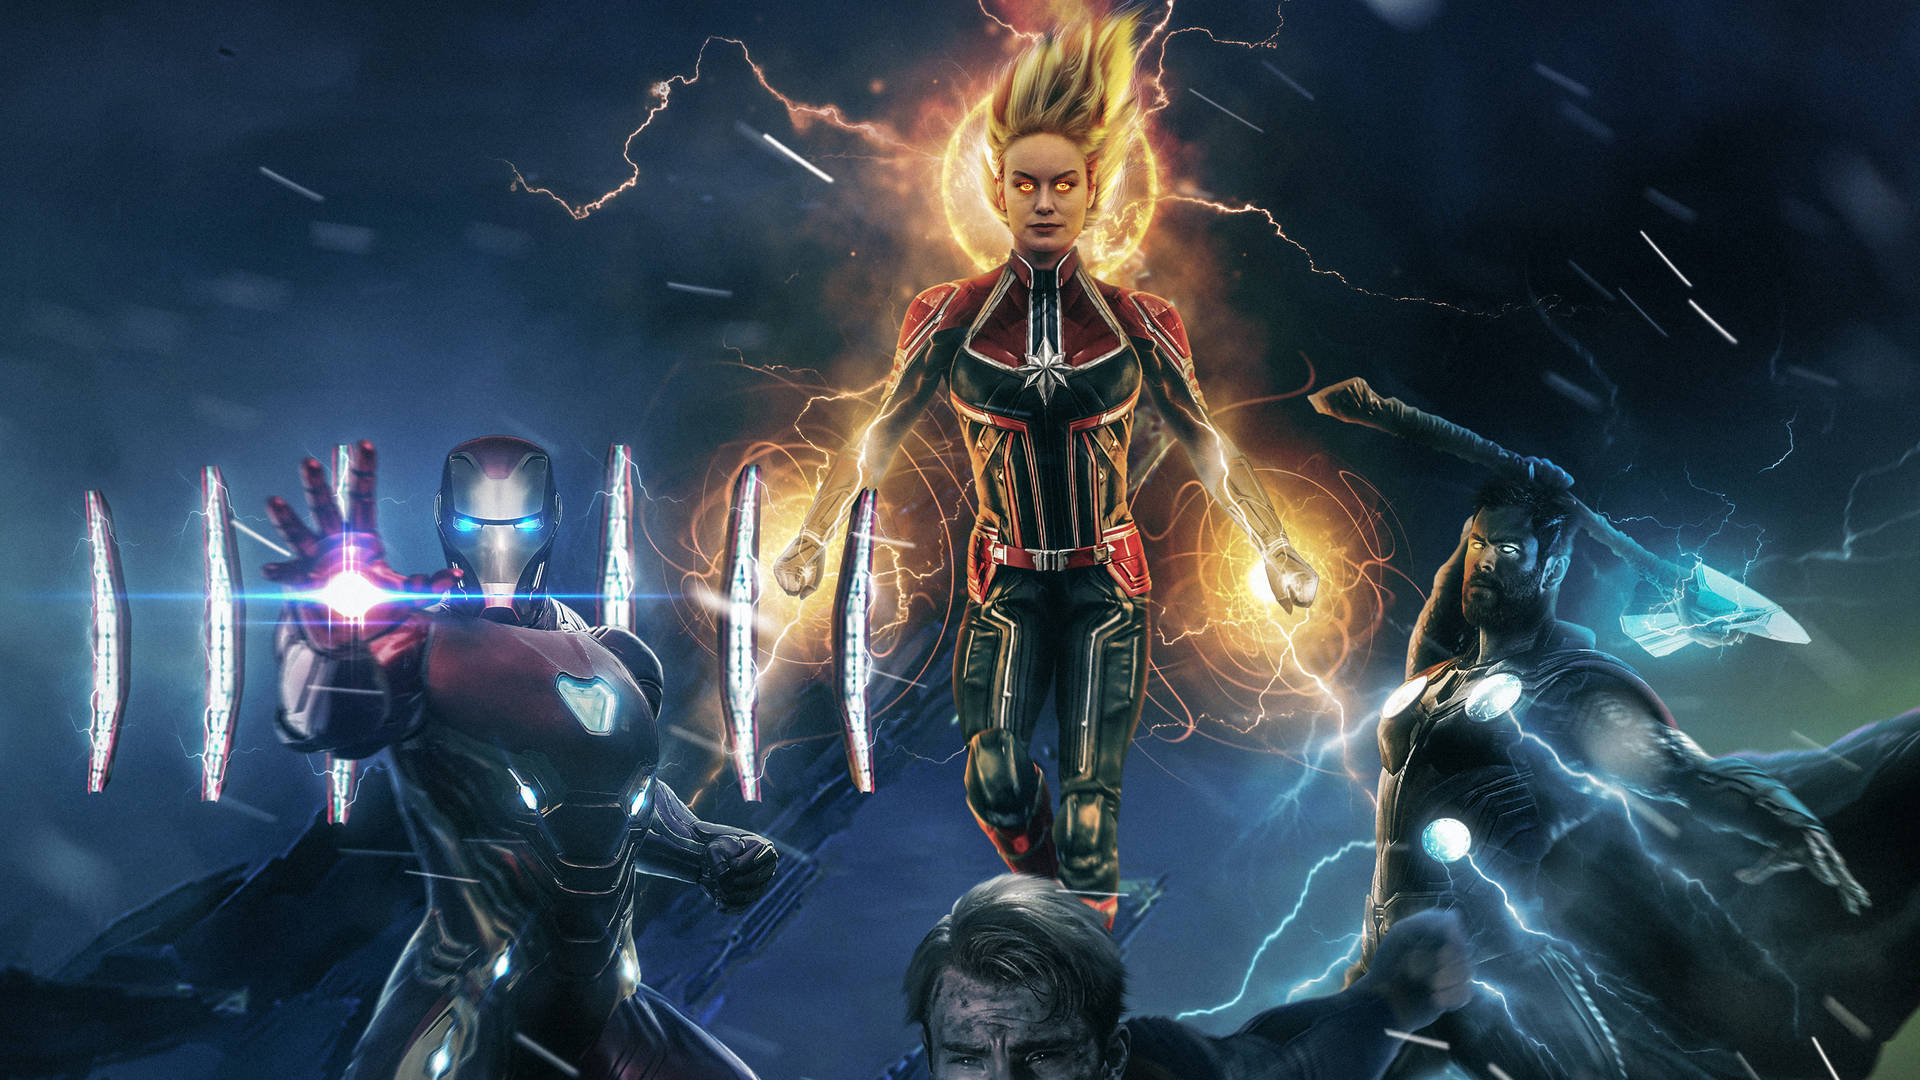 The Avengers assemble for battle in Avengers: Endgame Wallpaper